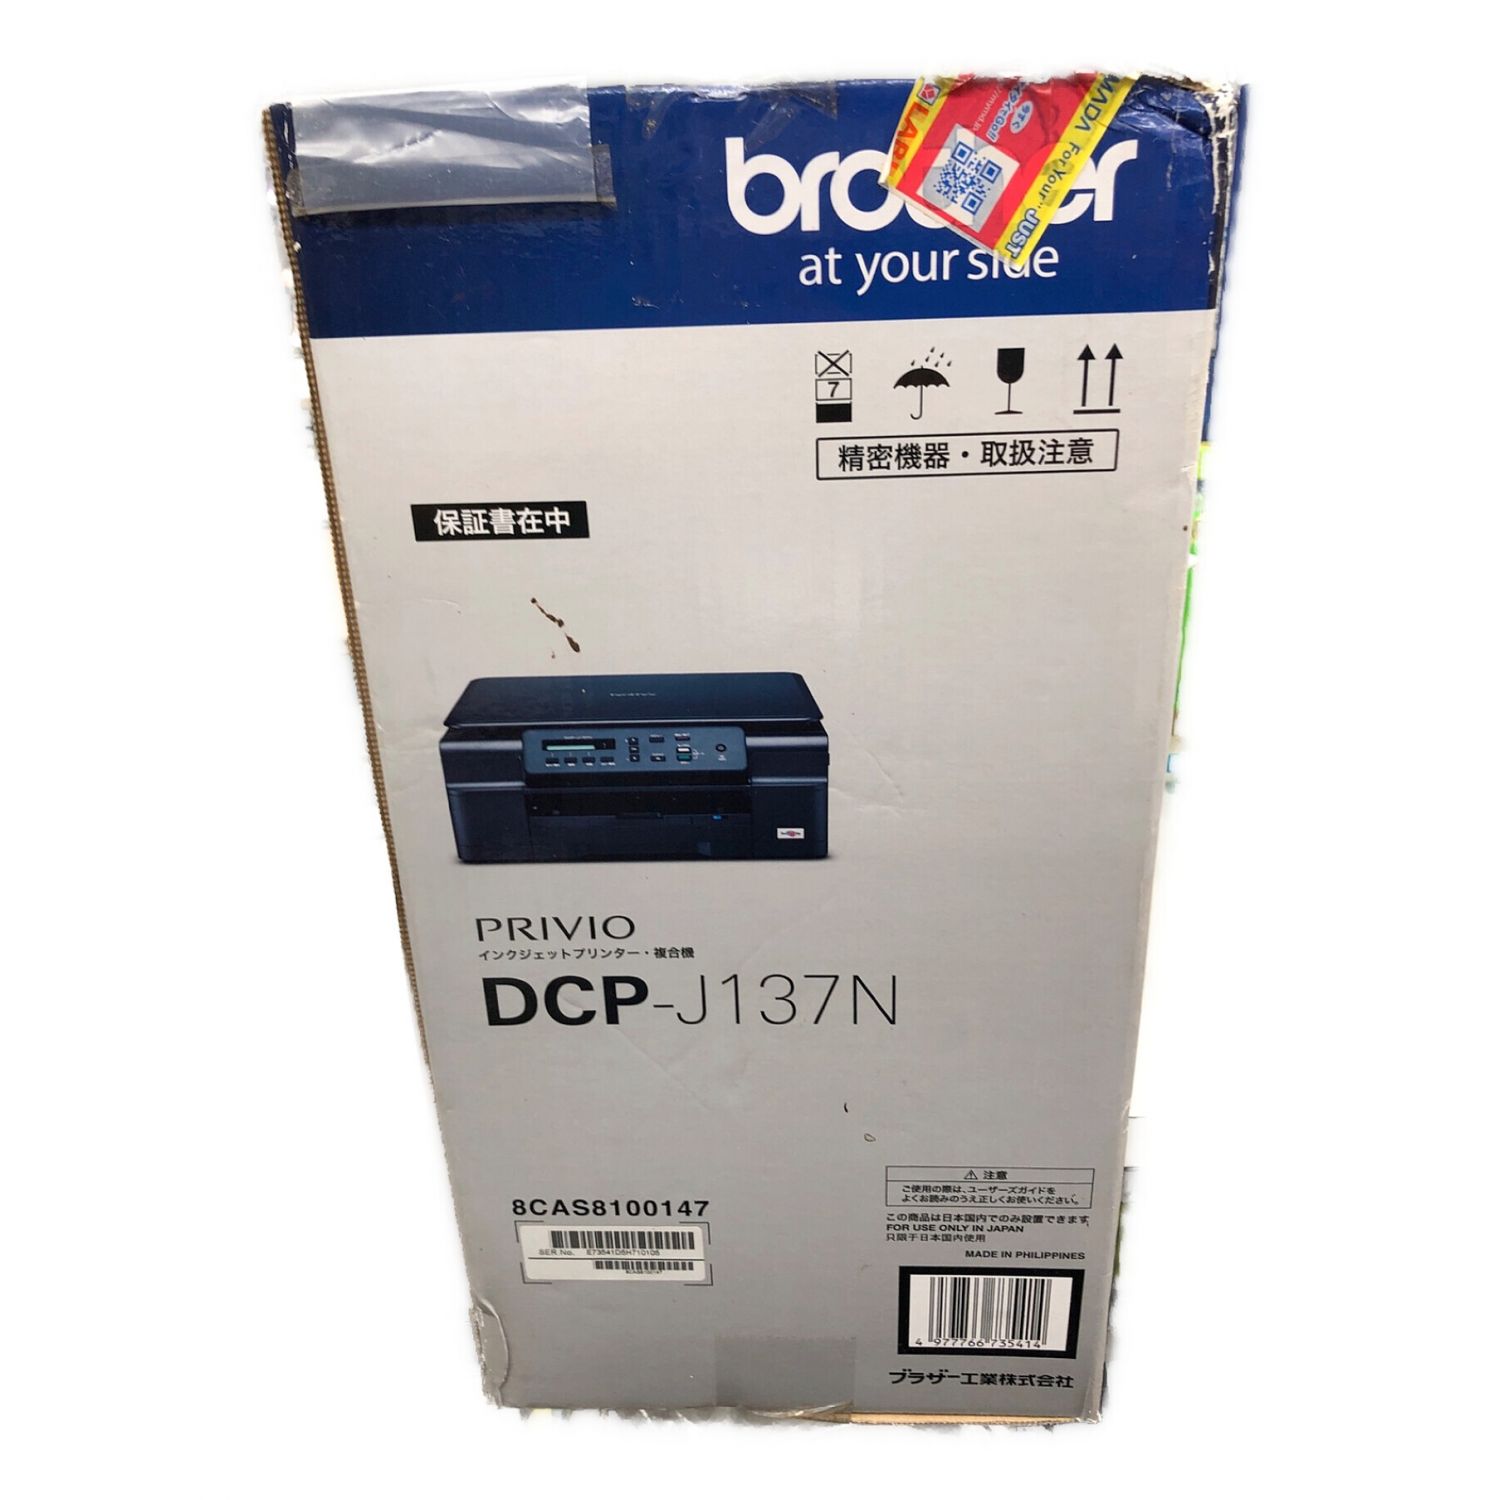 Brother インクジェットプリンター複合機 DCP-J137N